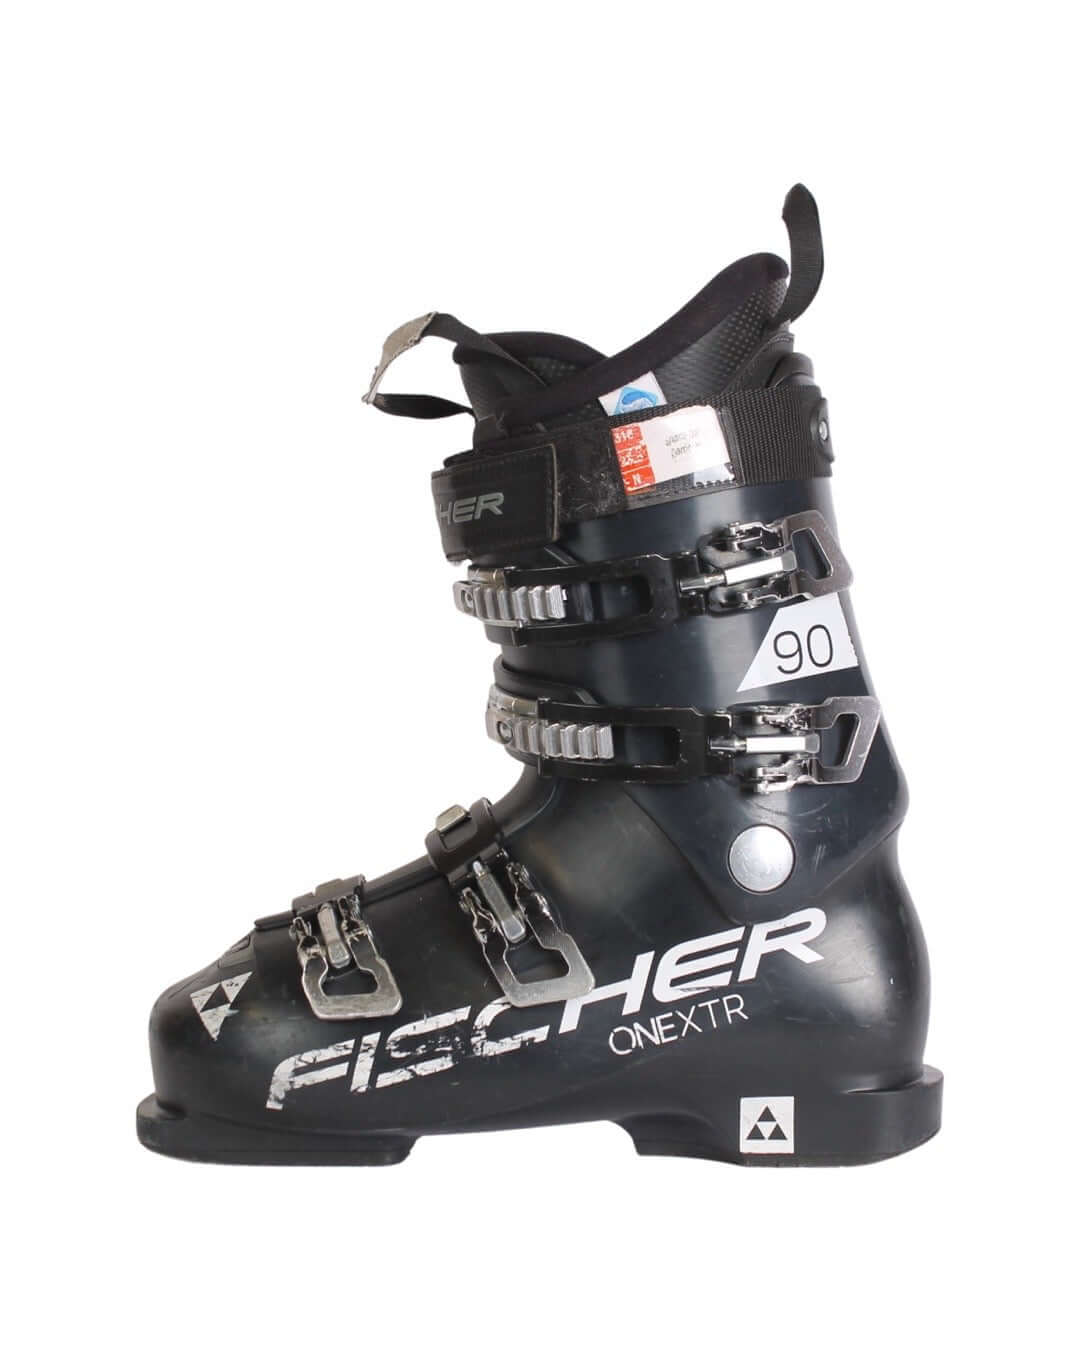 Støvler - Fischer ONE XTR 90 Pro - fra 749 kr